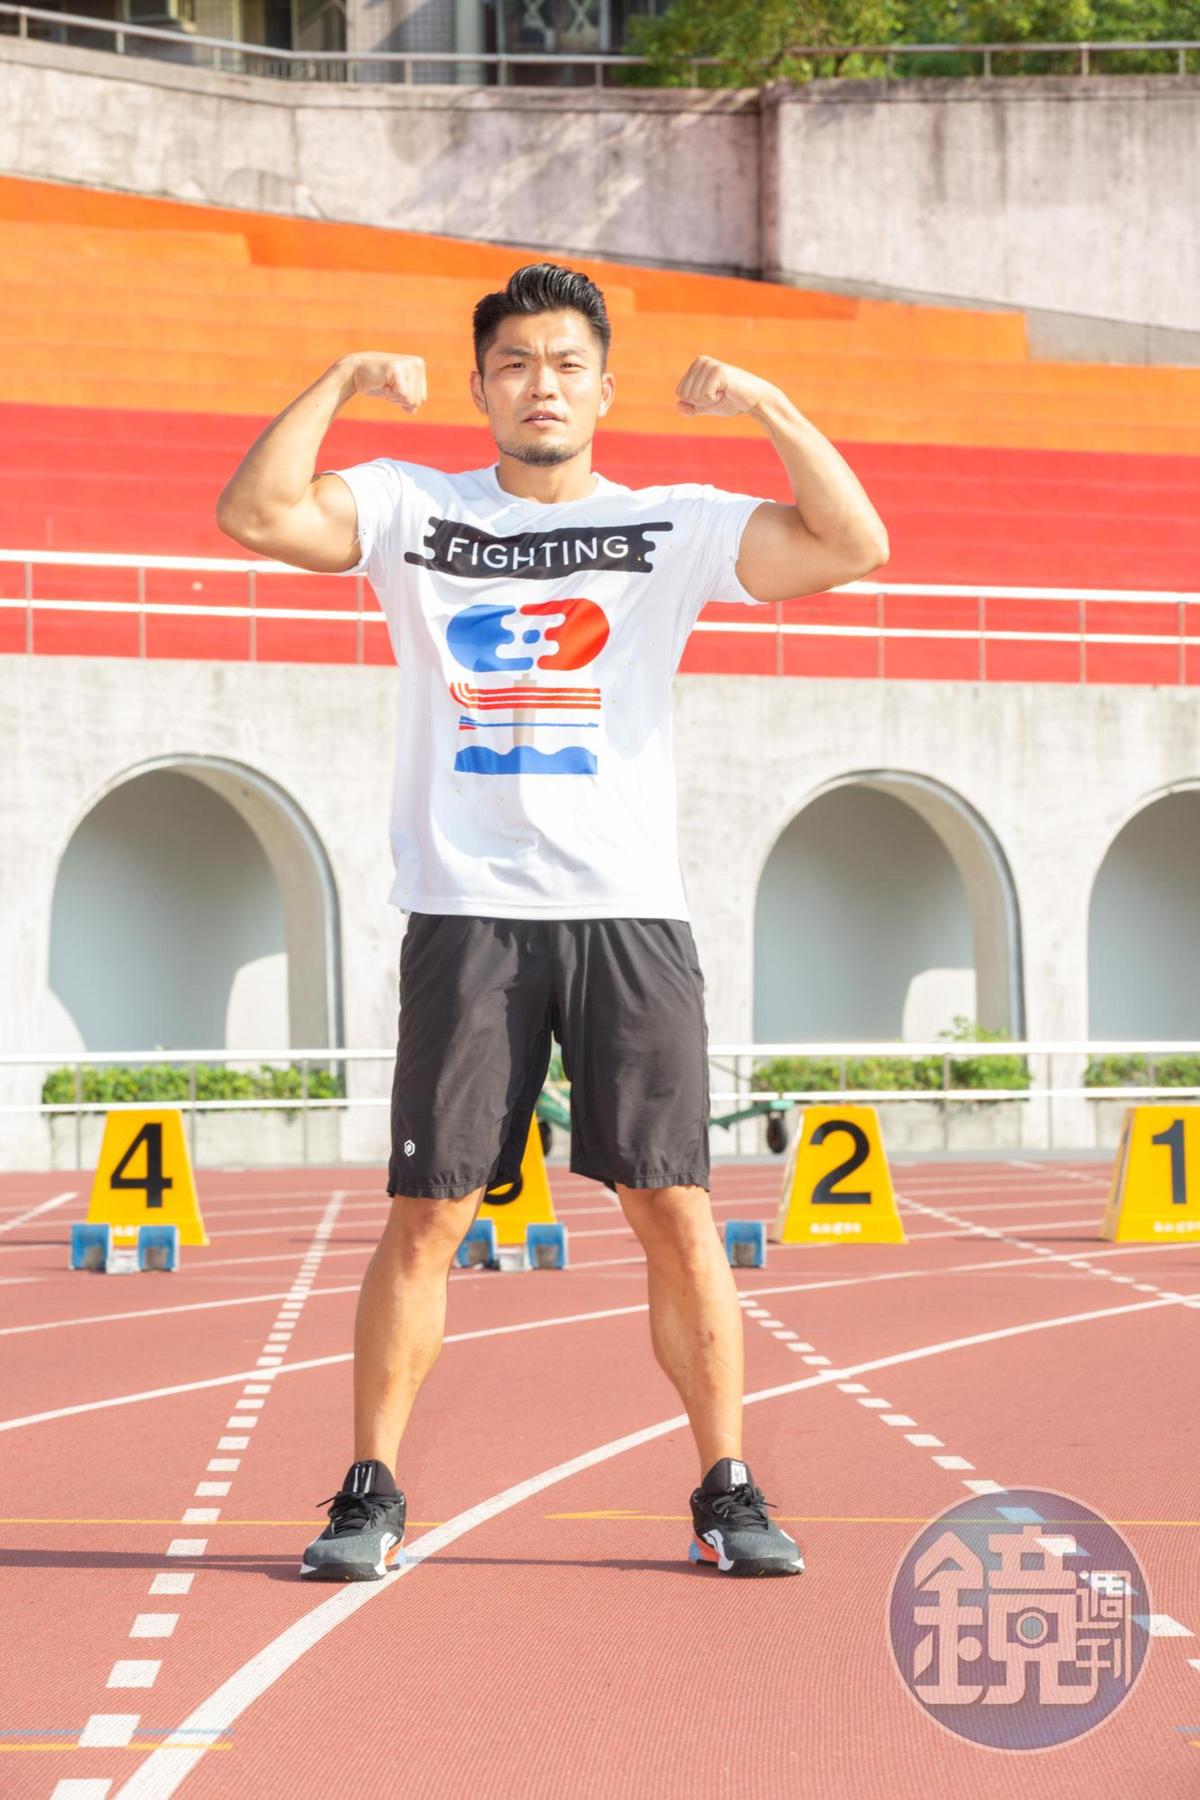 身材健美的李玖哲，最愛的運動項目為舉重，想透過此新節目讓更多年輕人愛運動。 